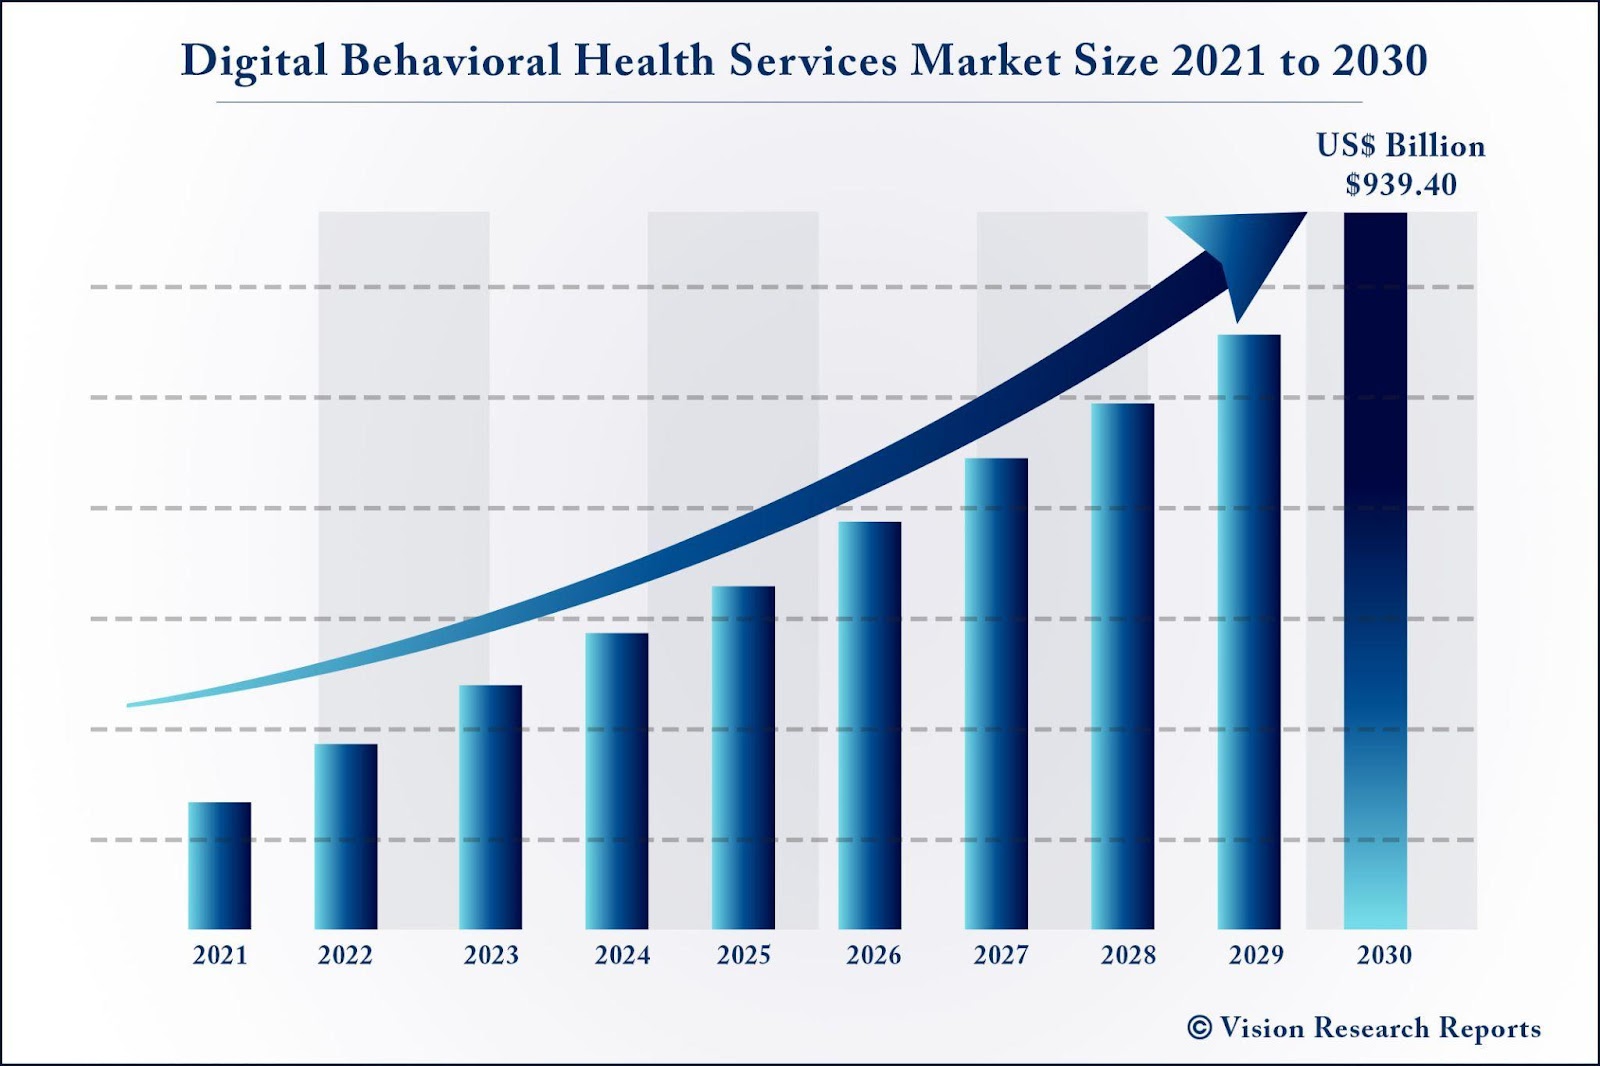 Digital behavioral health market size